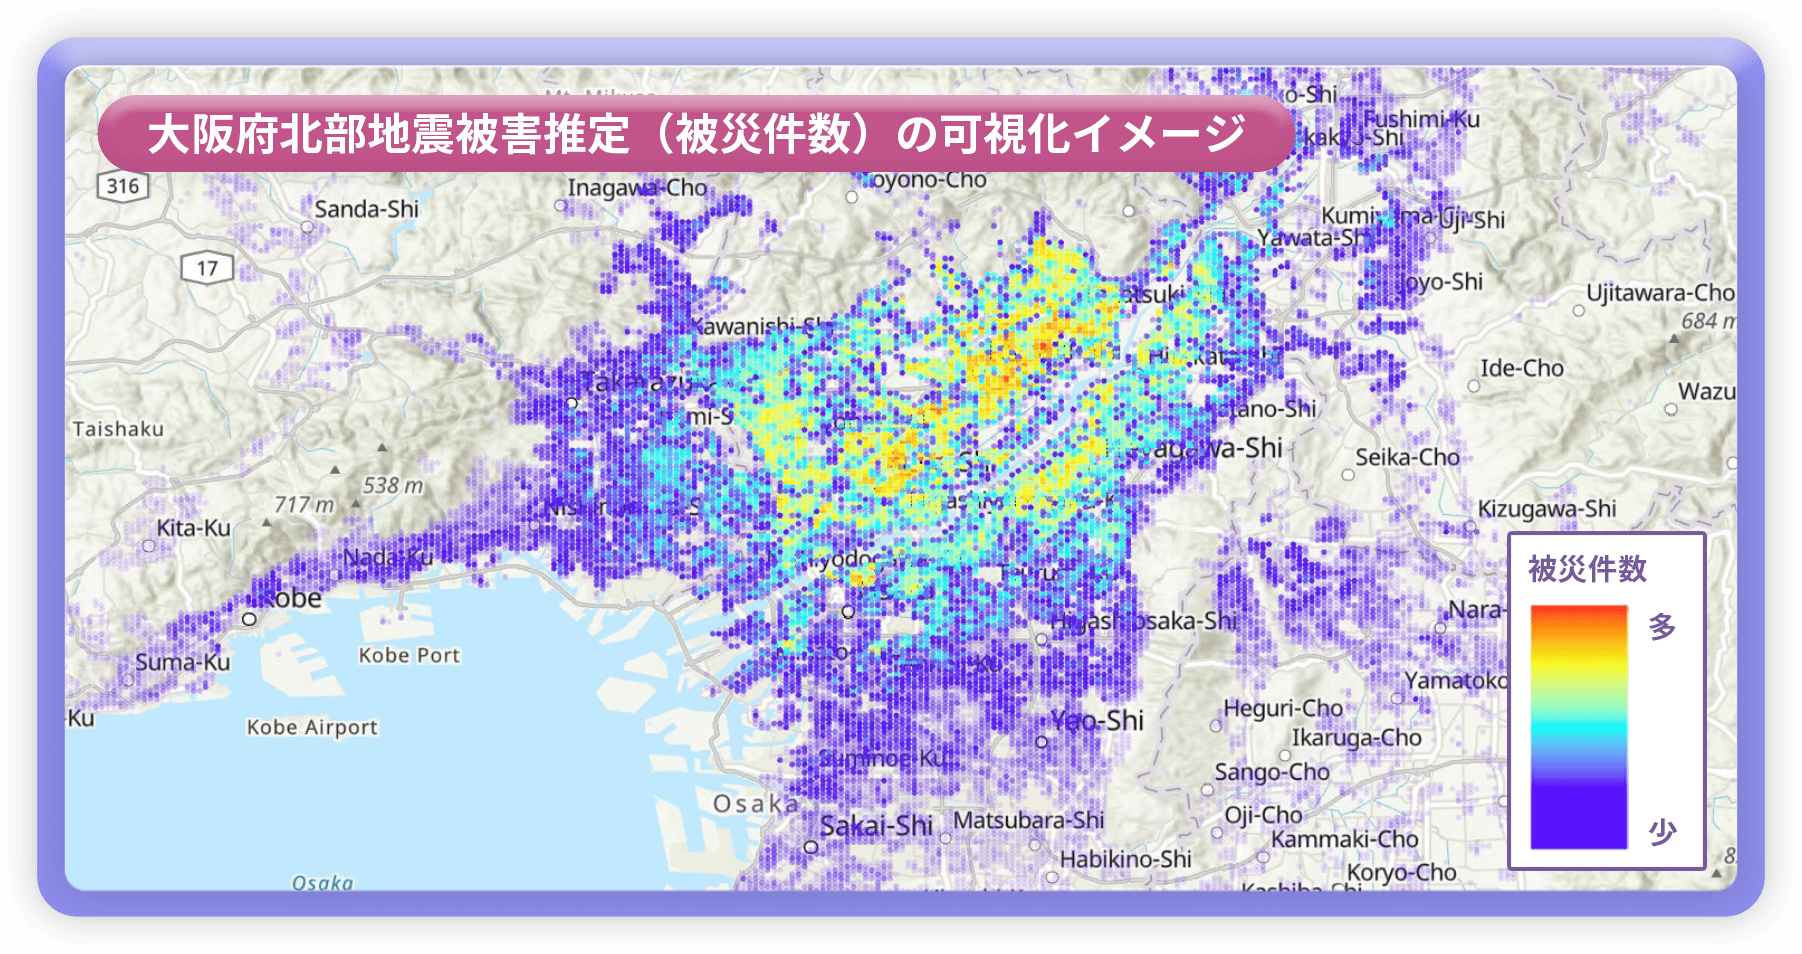 大阪府北部地震被害推定（被災件数）の可視化イメージ